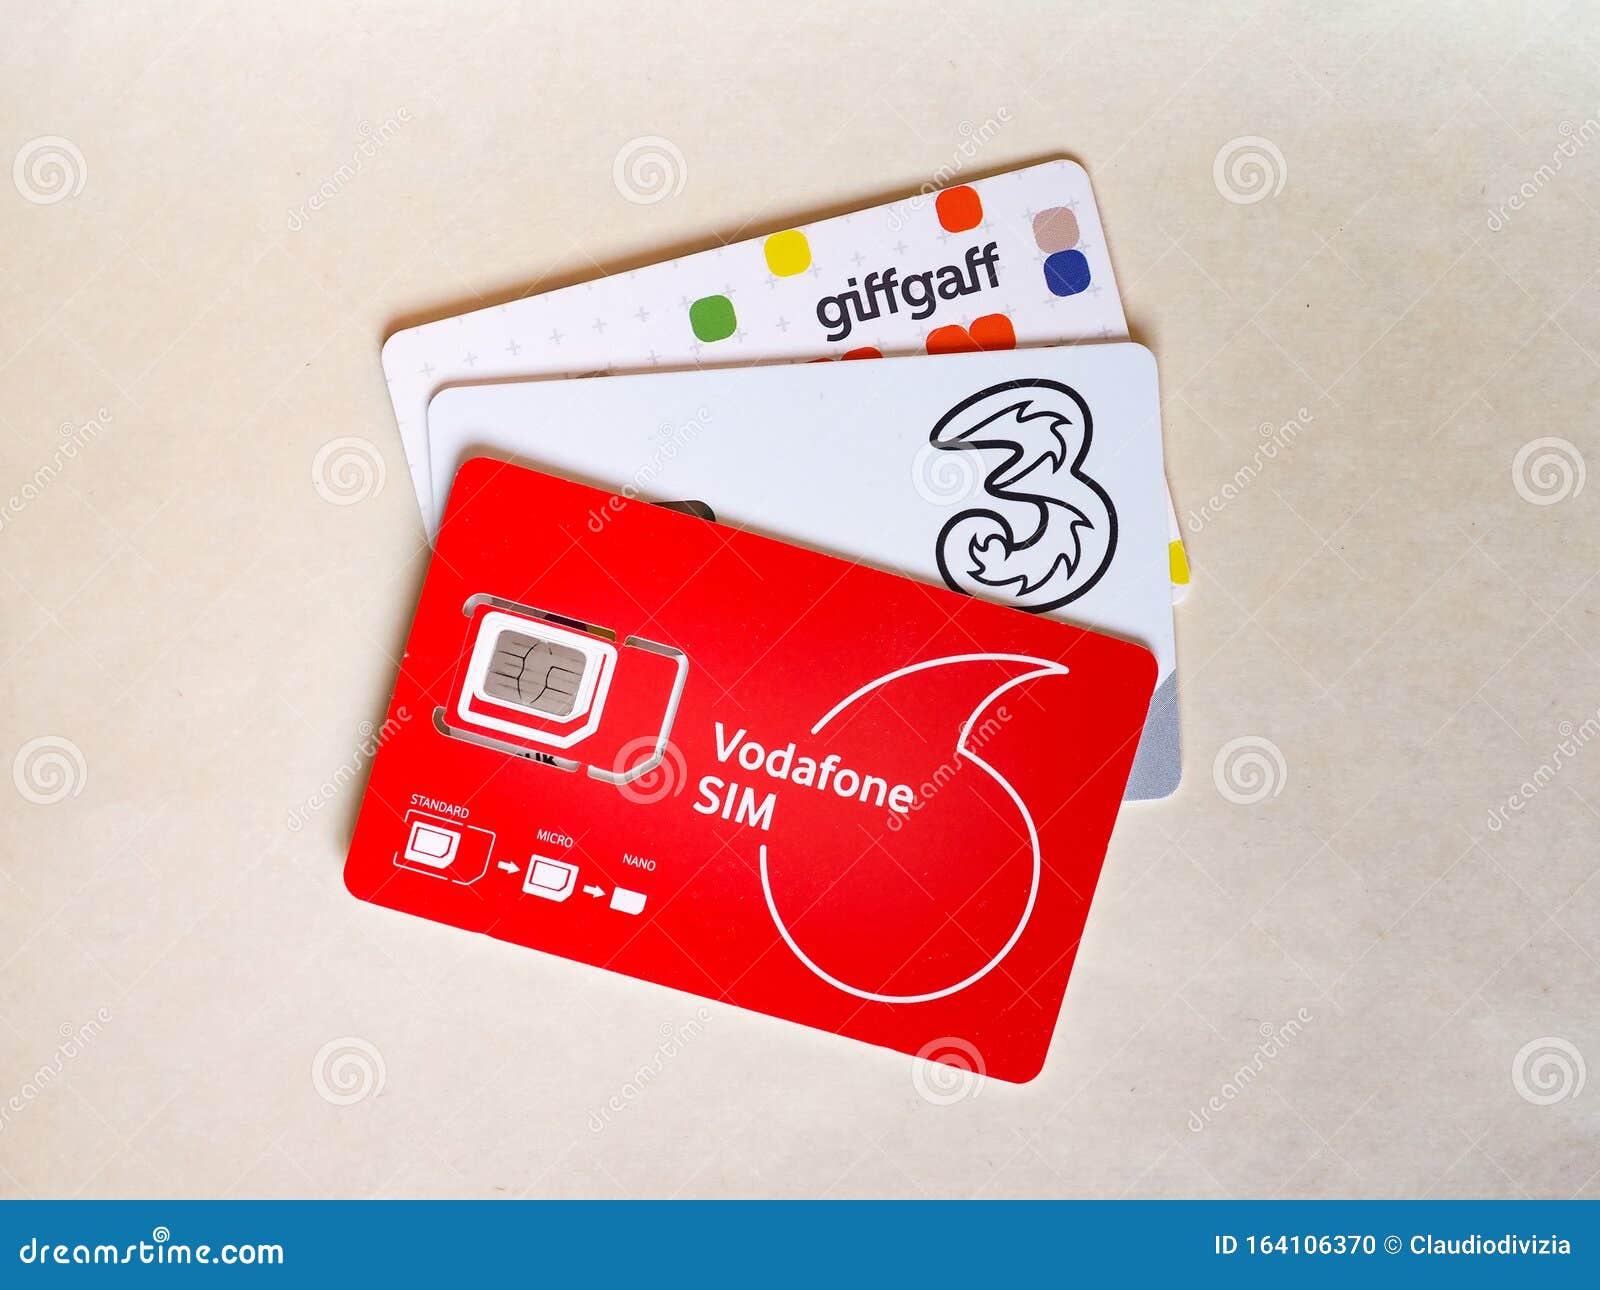 GiffGaff GIFF Gaff Nano/Micro/estándar 3 en 1 Sim Gratis £ 5 datos ilimitado de crédito 